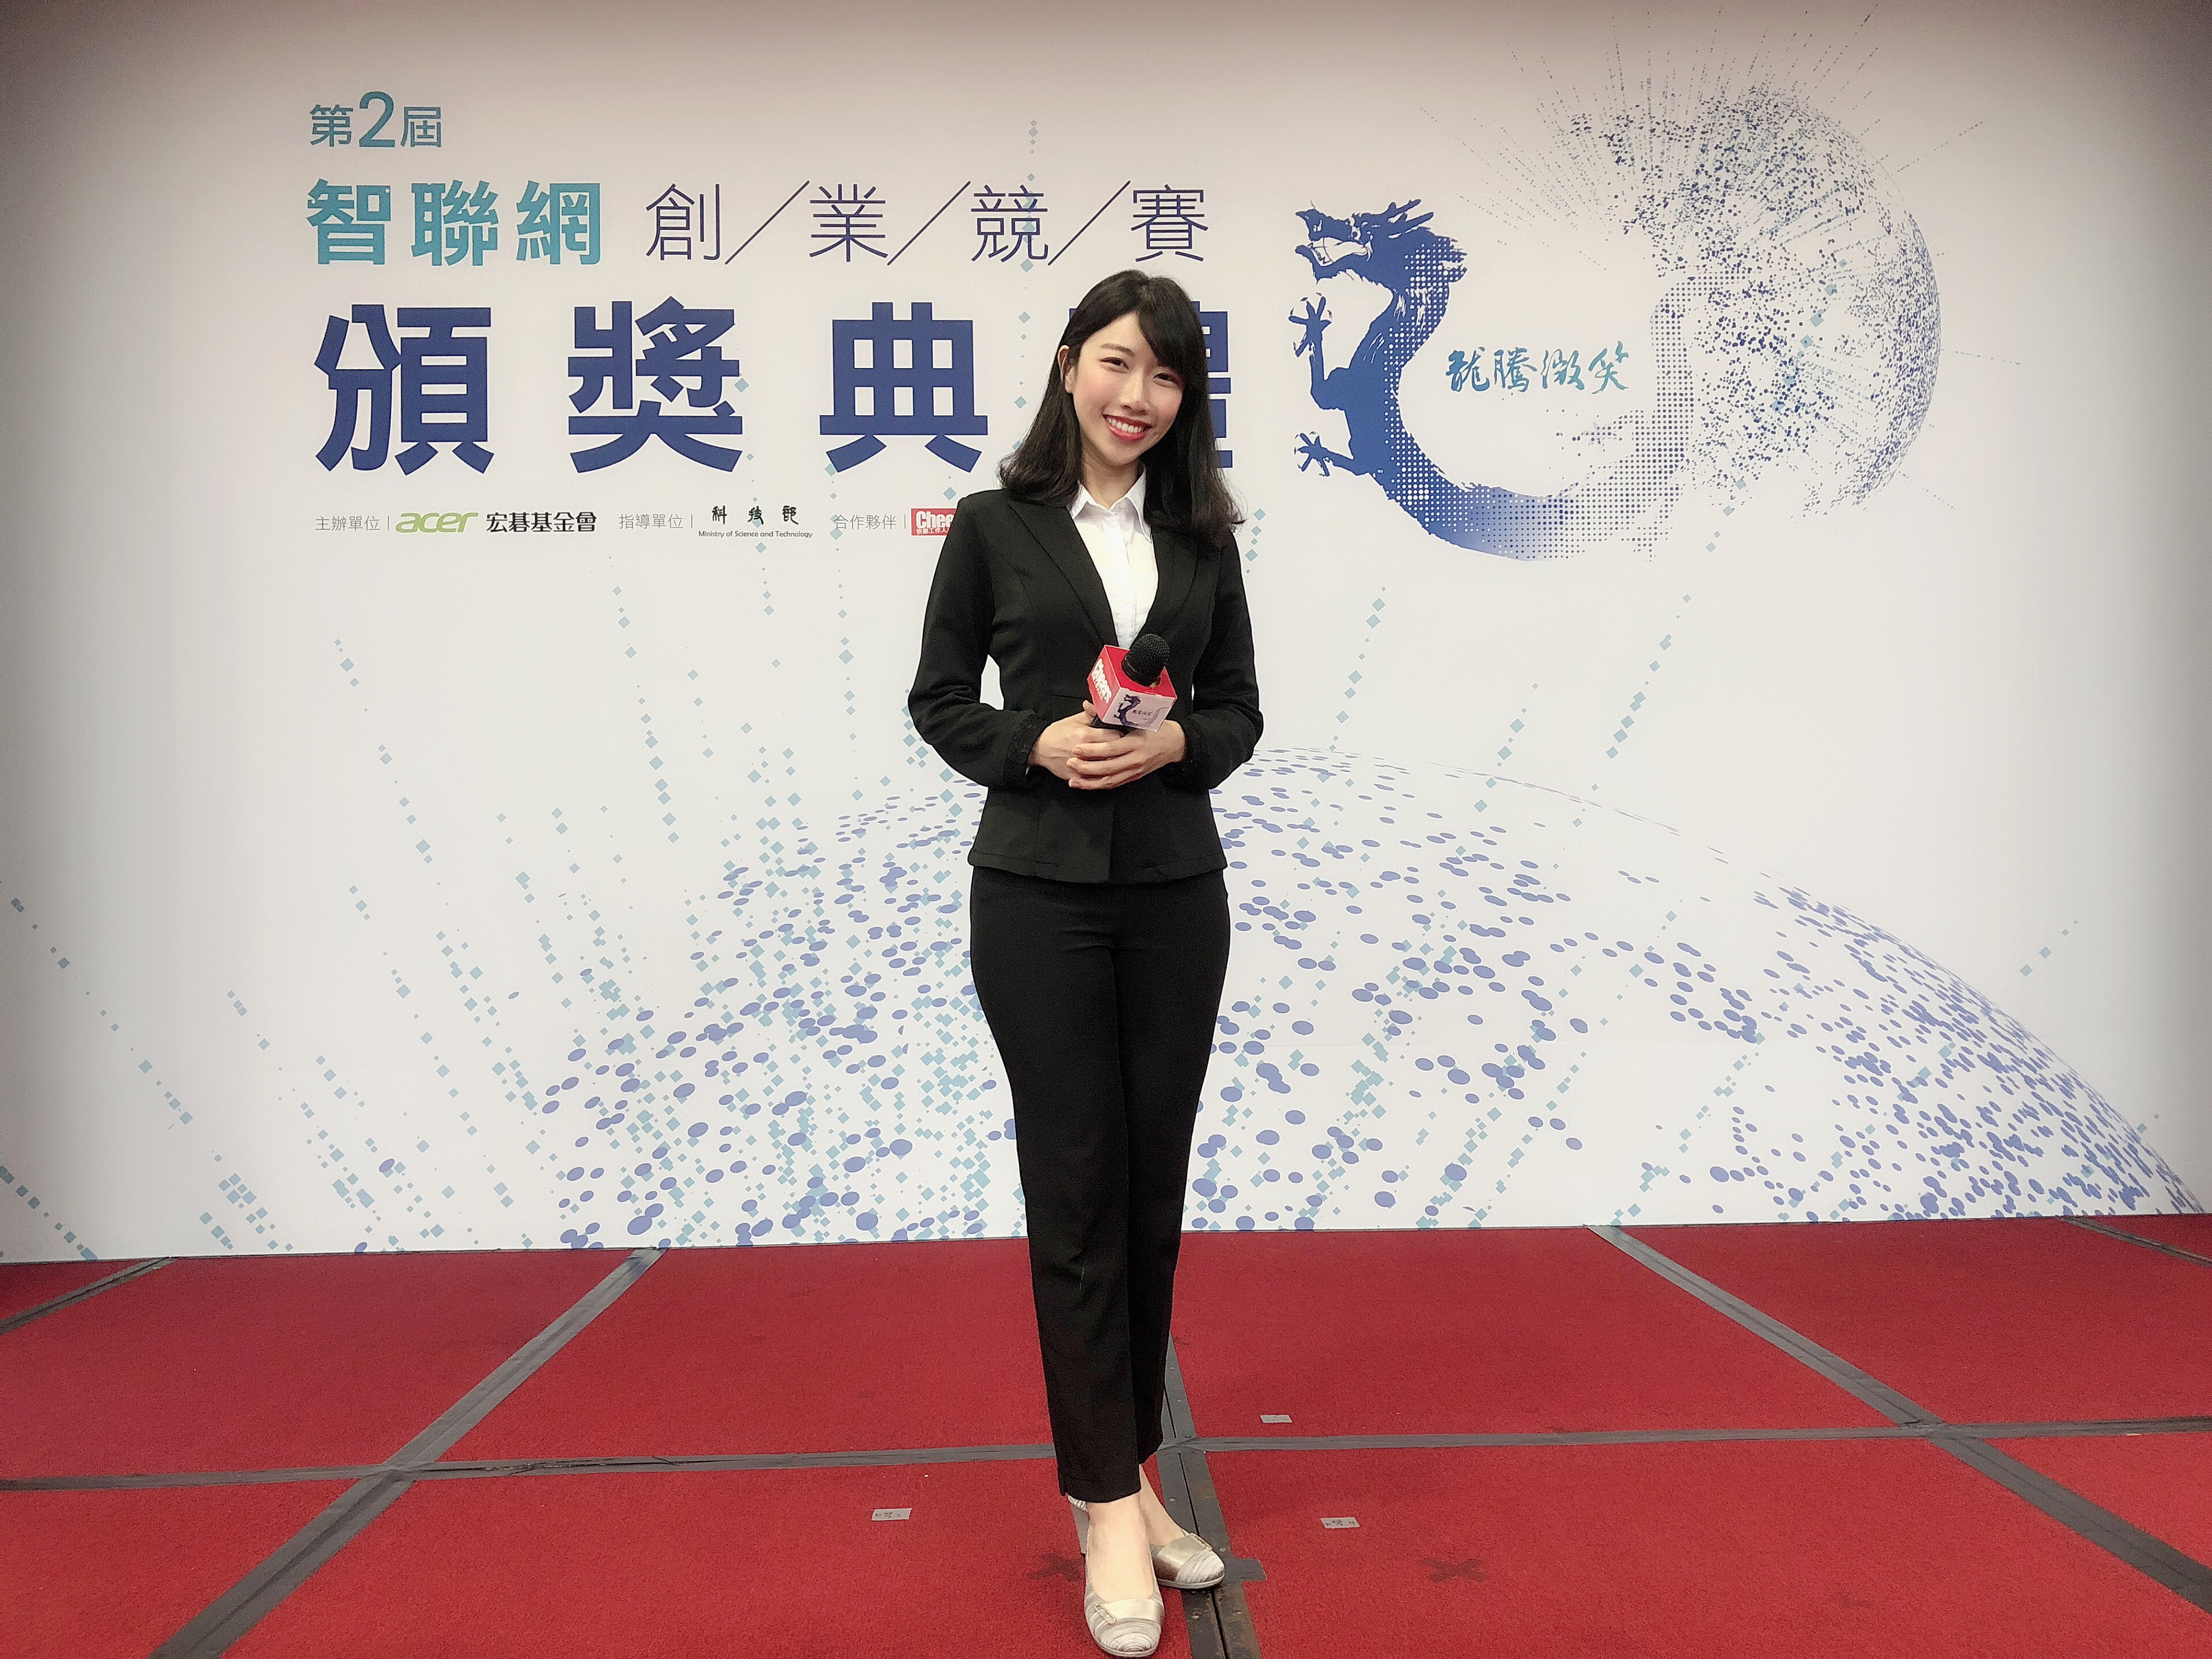 王純蕙Tiffany主持人工作紀錄: 第二屆龍騰微笑智聯網創業競賽頒獎典禮  活動主持人